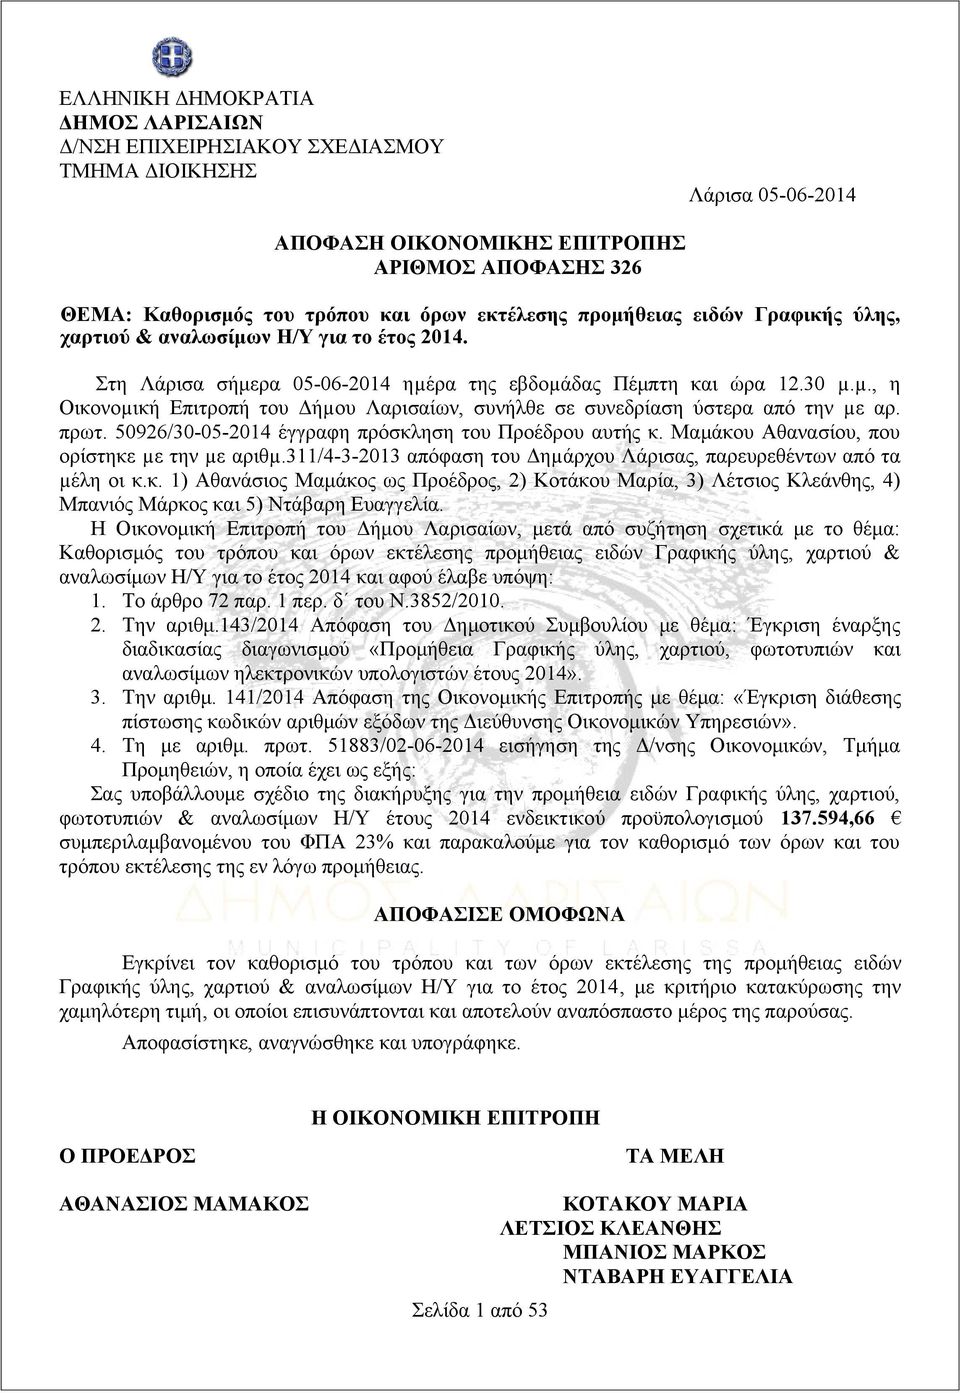 πρωτ. 50926/30-05-2014 έγγραφη πρόσκληση του Προέδρου αυτής κ. Μαμάκου Αθανασίου, που ορίστηκε µε την µε αριθµ.311/4-3-2013 απόφαση του Δηµάρχου Λάρισας, παρευρεθέντων από τα µέλη οι κ.κ. 1) Αθανάσιος Μαμάκος ως Προέδρος, 2) Κοτάκου Μαρία, 3) Λέτσιος Κλεάνθης, 4) Μπανιός Μάρκος και 5) Ντάβαρη Ευαγγελία.